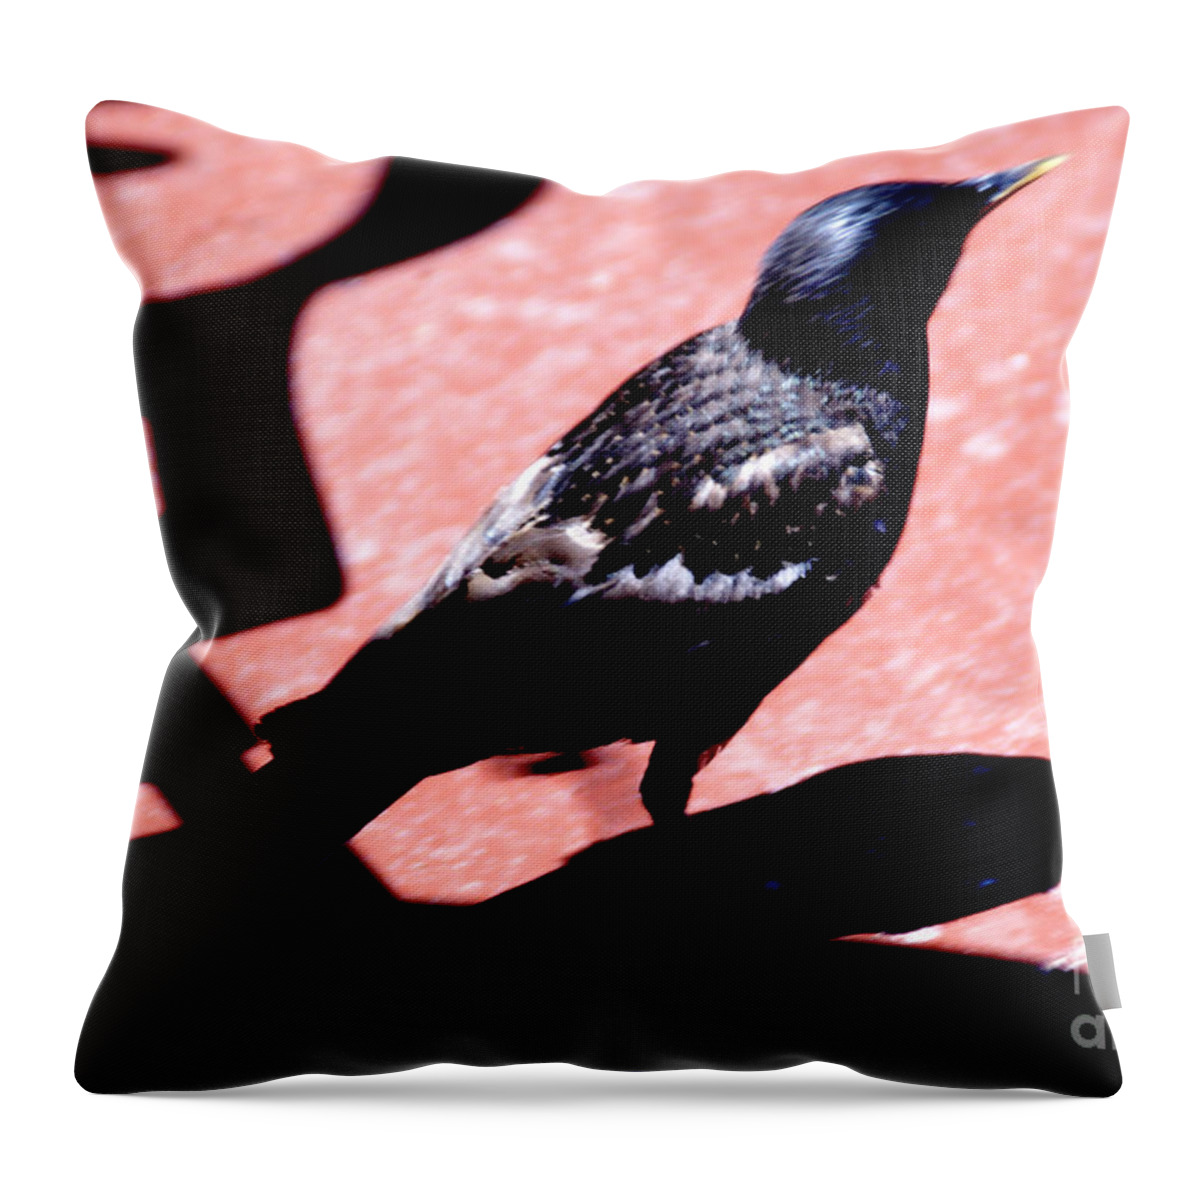 Bird Throw Pillow featuring the photograph Del Coronado by Linda Shafer